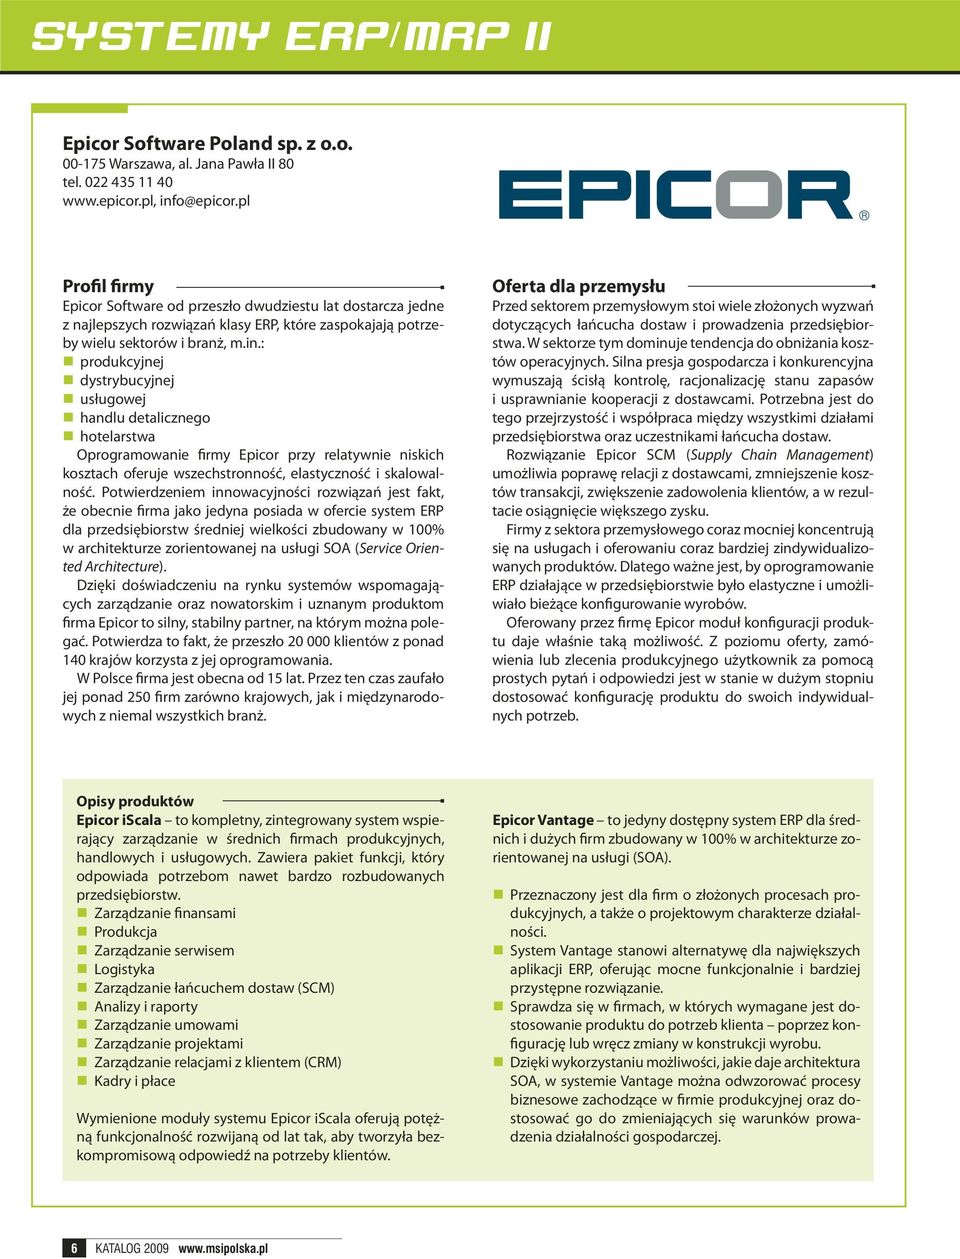 : produkcyjnej dystrybucyjnej usługowej handlu detalicznego hotelarstwa Oprogramowanie firmy Epicor przy relatywnie niskich kosztach oferuje wszechstronność, elastyczność i skalowalność.